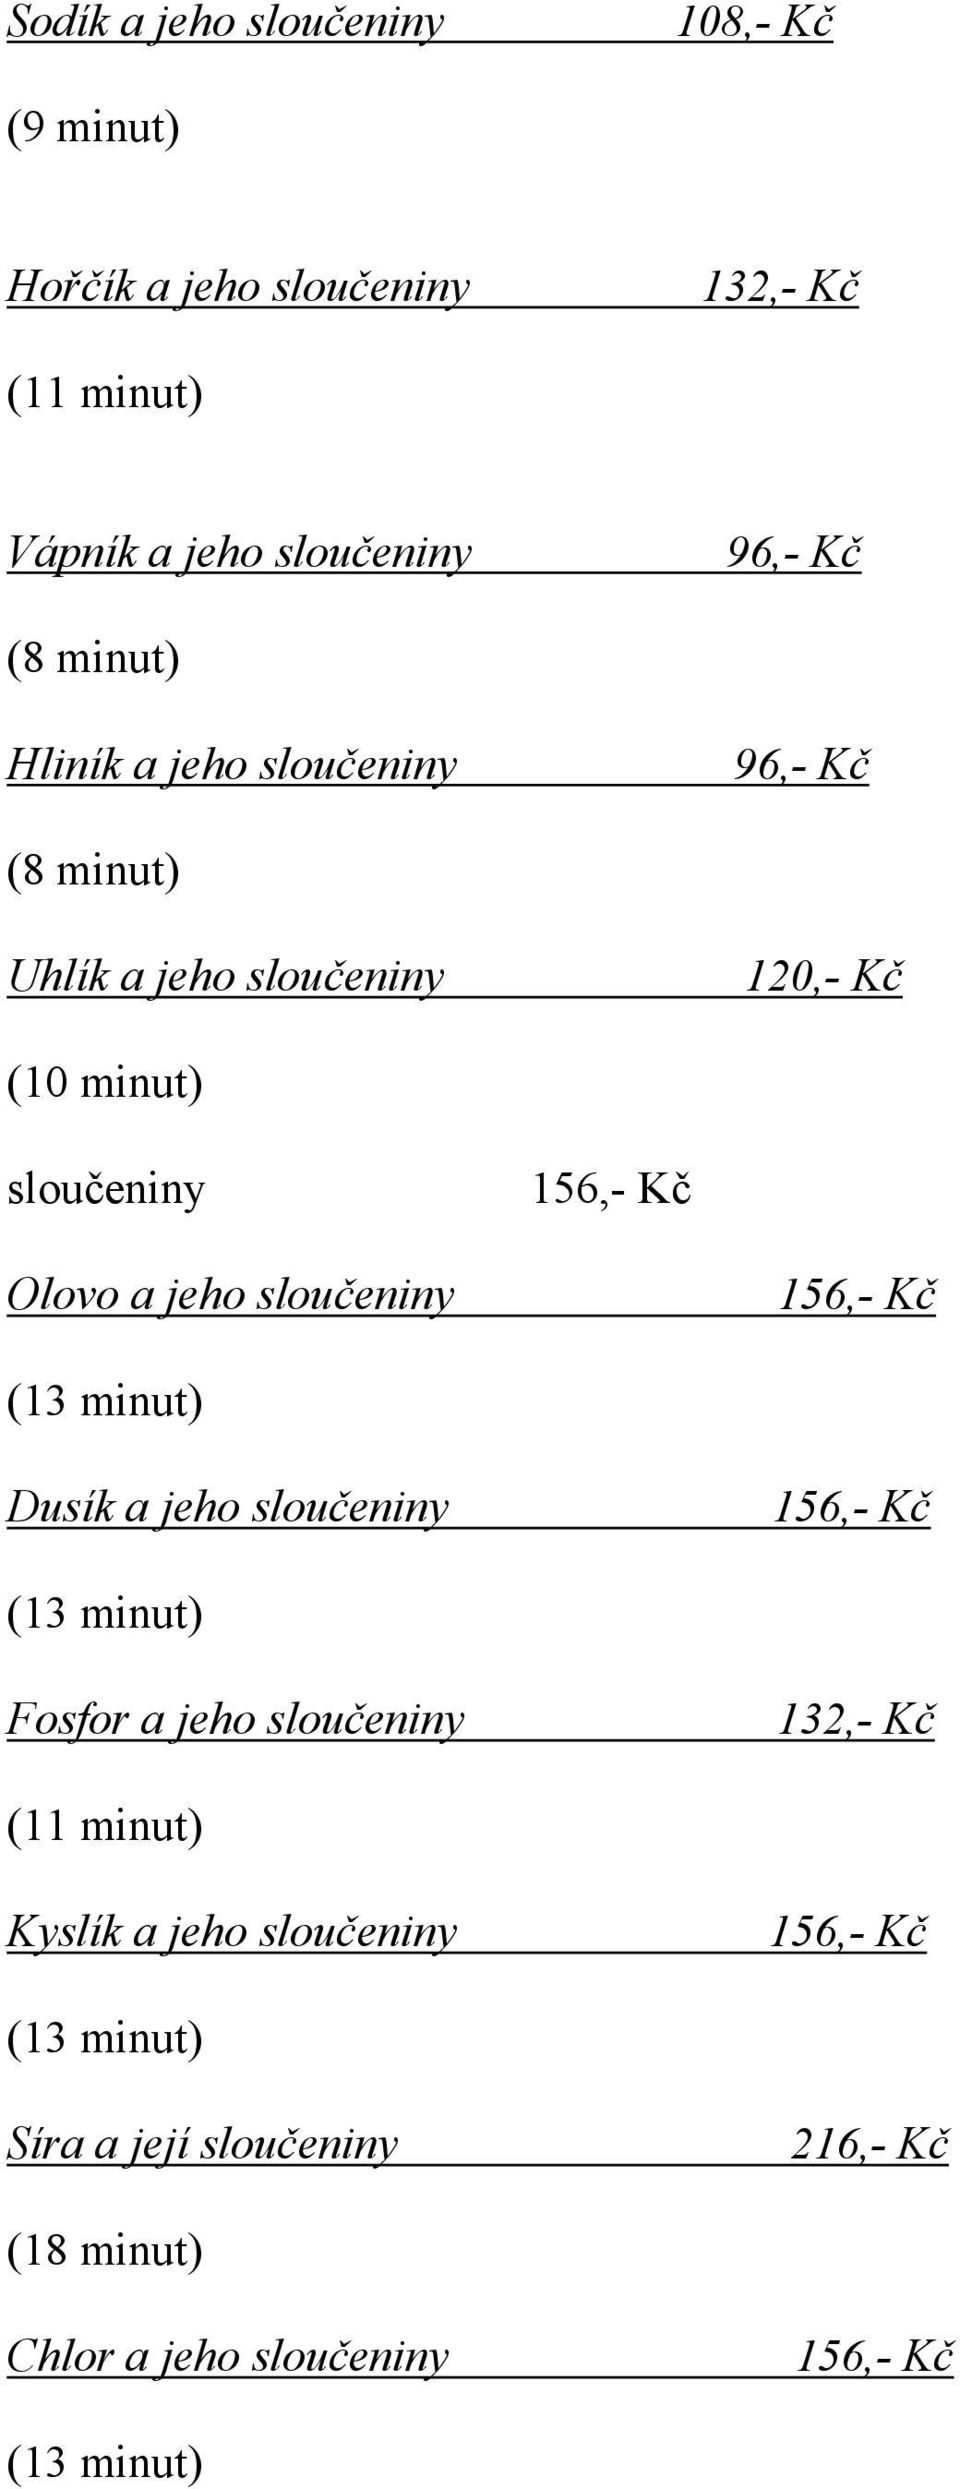 120,- Kč (10 minut) sloučeniny Olovo a jeho sloučeniny Dusík a jeho sloučeniny Fosfor a jeho